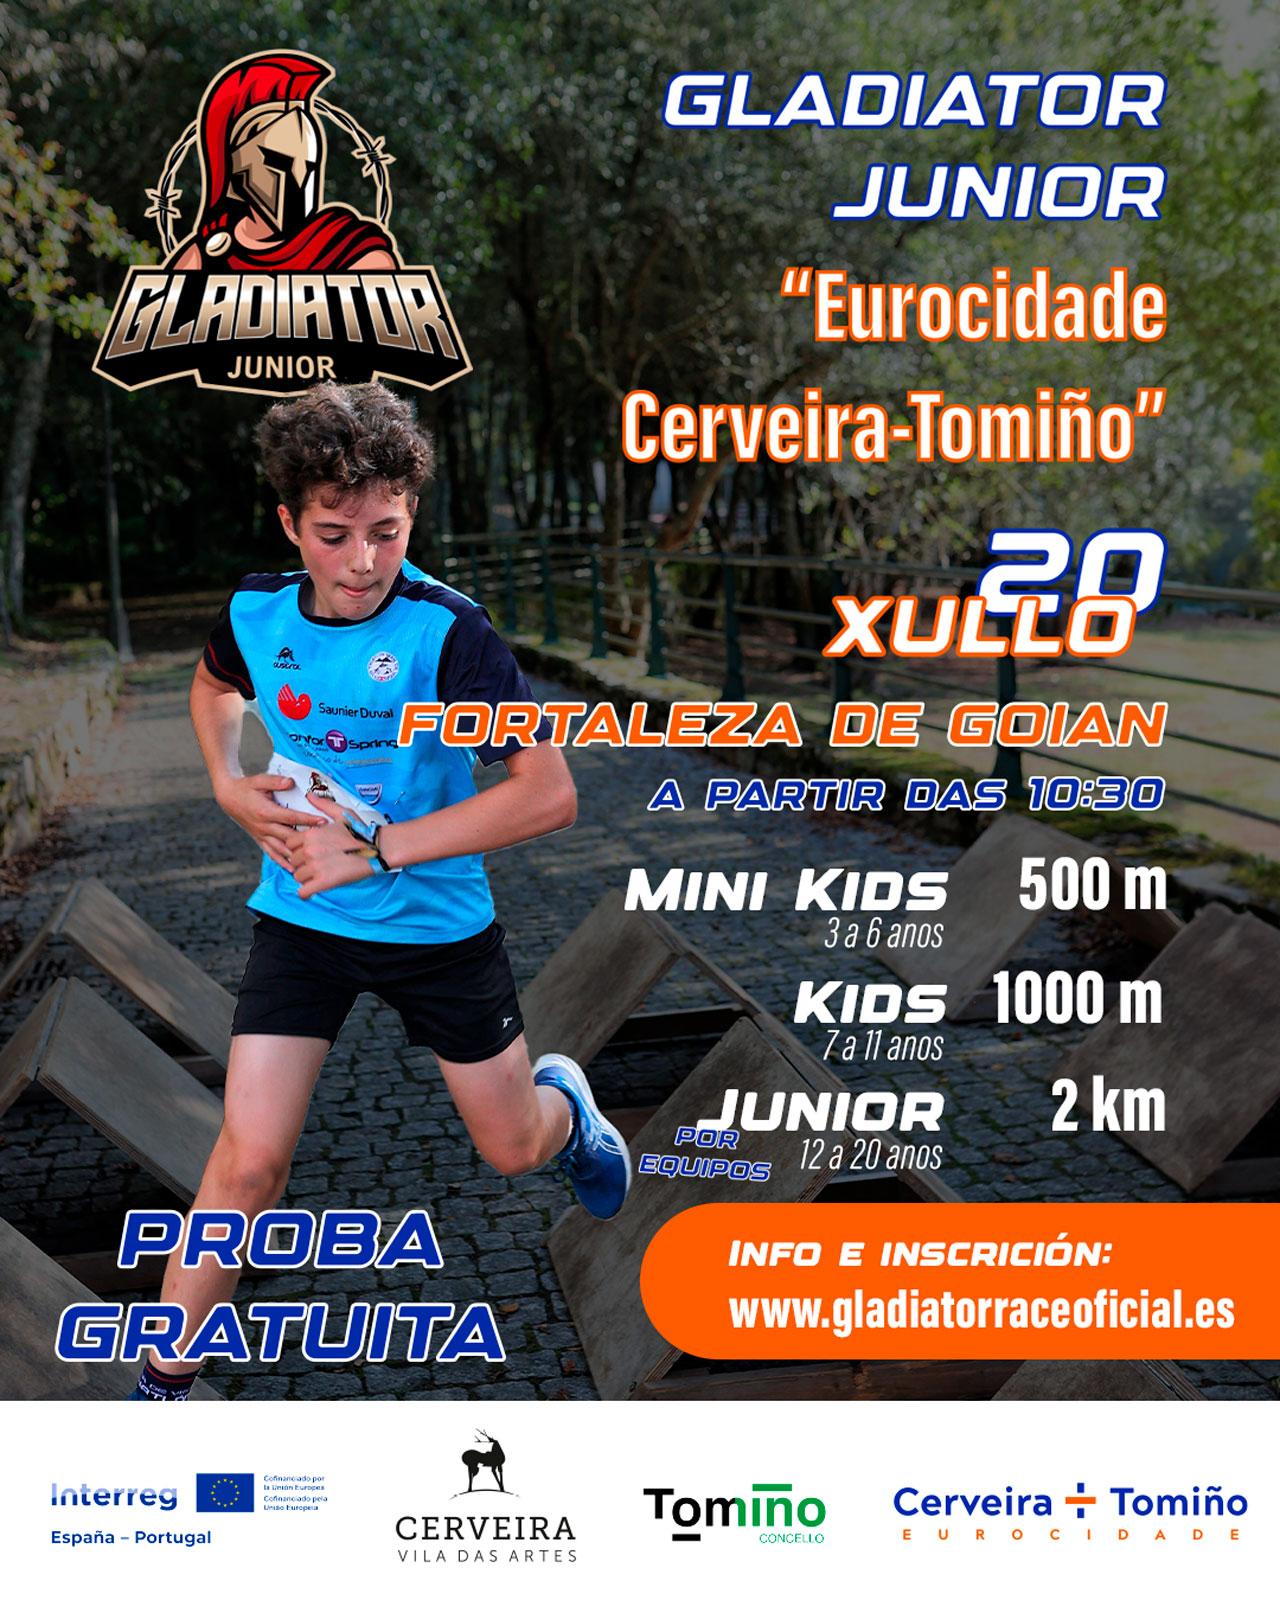 400 prazas dispoñibles para enfrontarse ao reto da Gladiator Race Junior da Eurocidade Cerveira-Tomiño